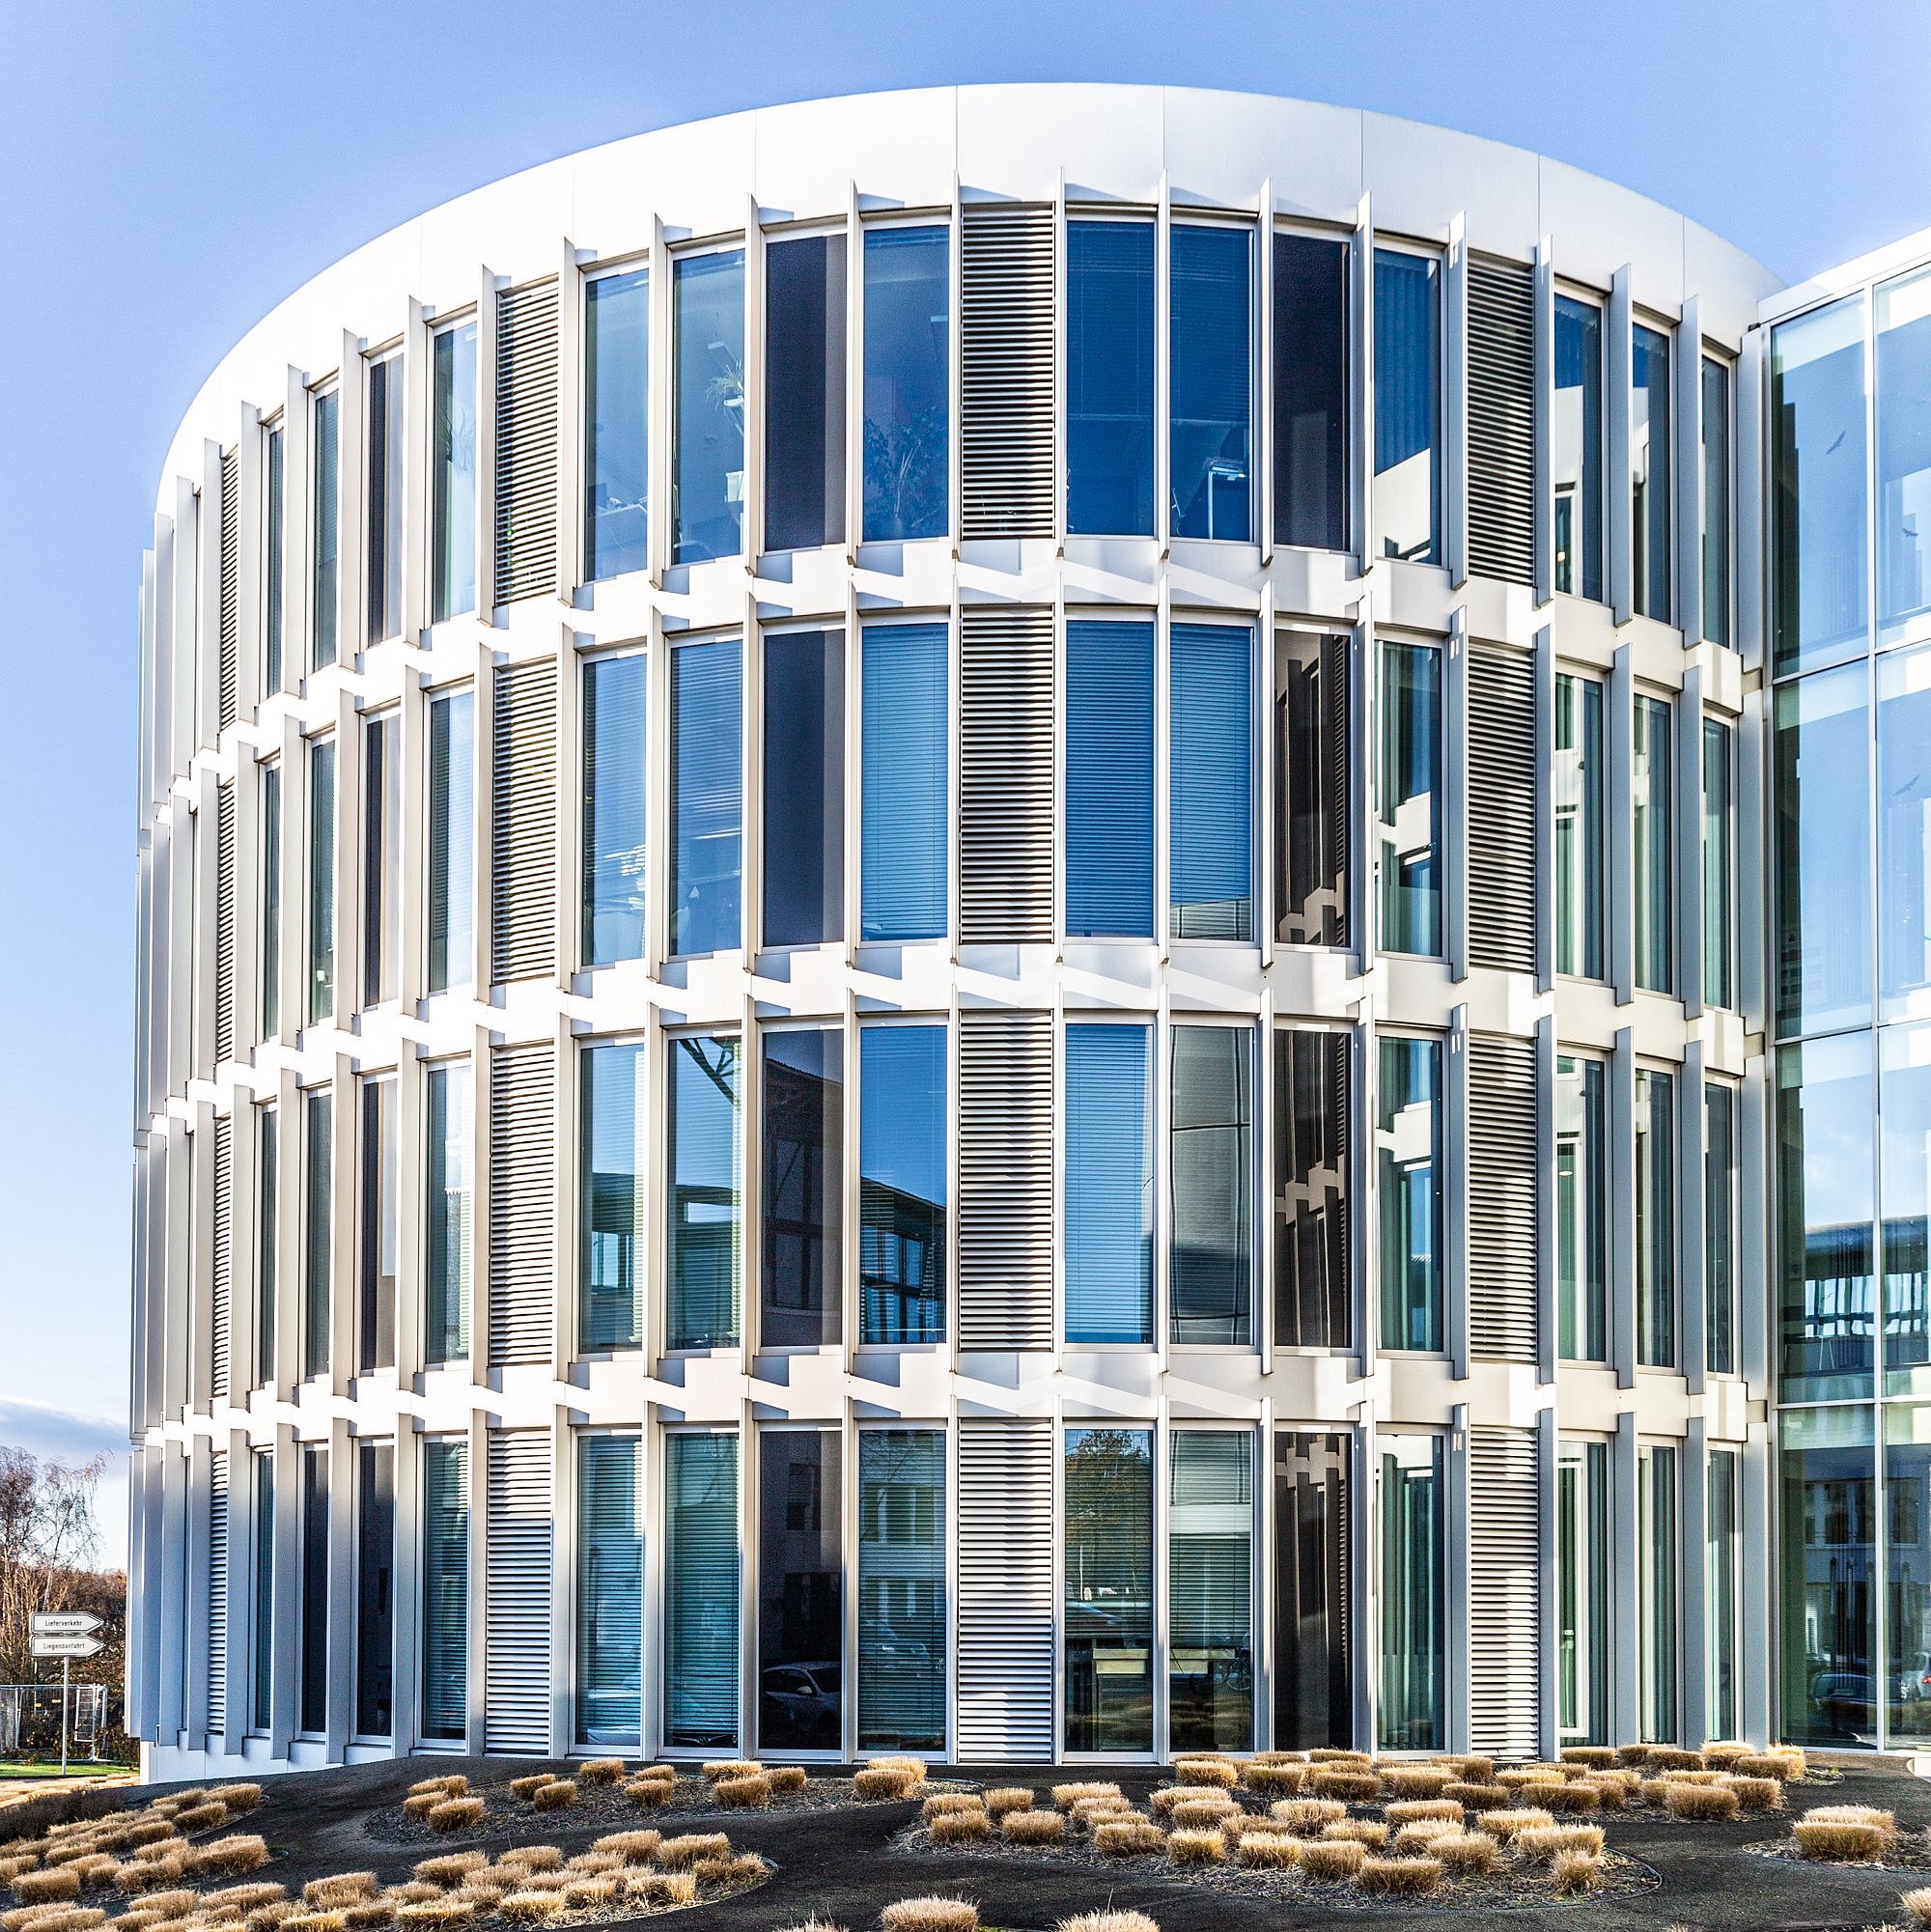 Eines der Innovationszentren Ruhr im Ruhrgebiet von vorne, zu sehen sind Pflanzen im Vordergrund mit dem runden, modern anmutenden Glasgebäude im Hintergrund